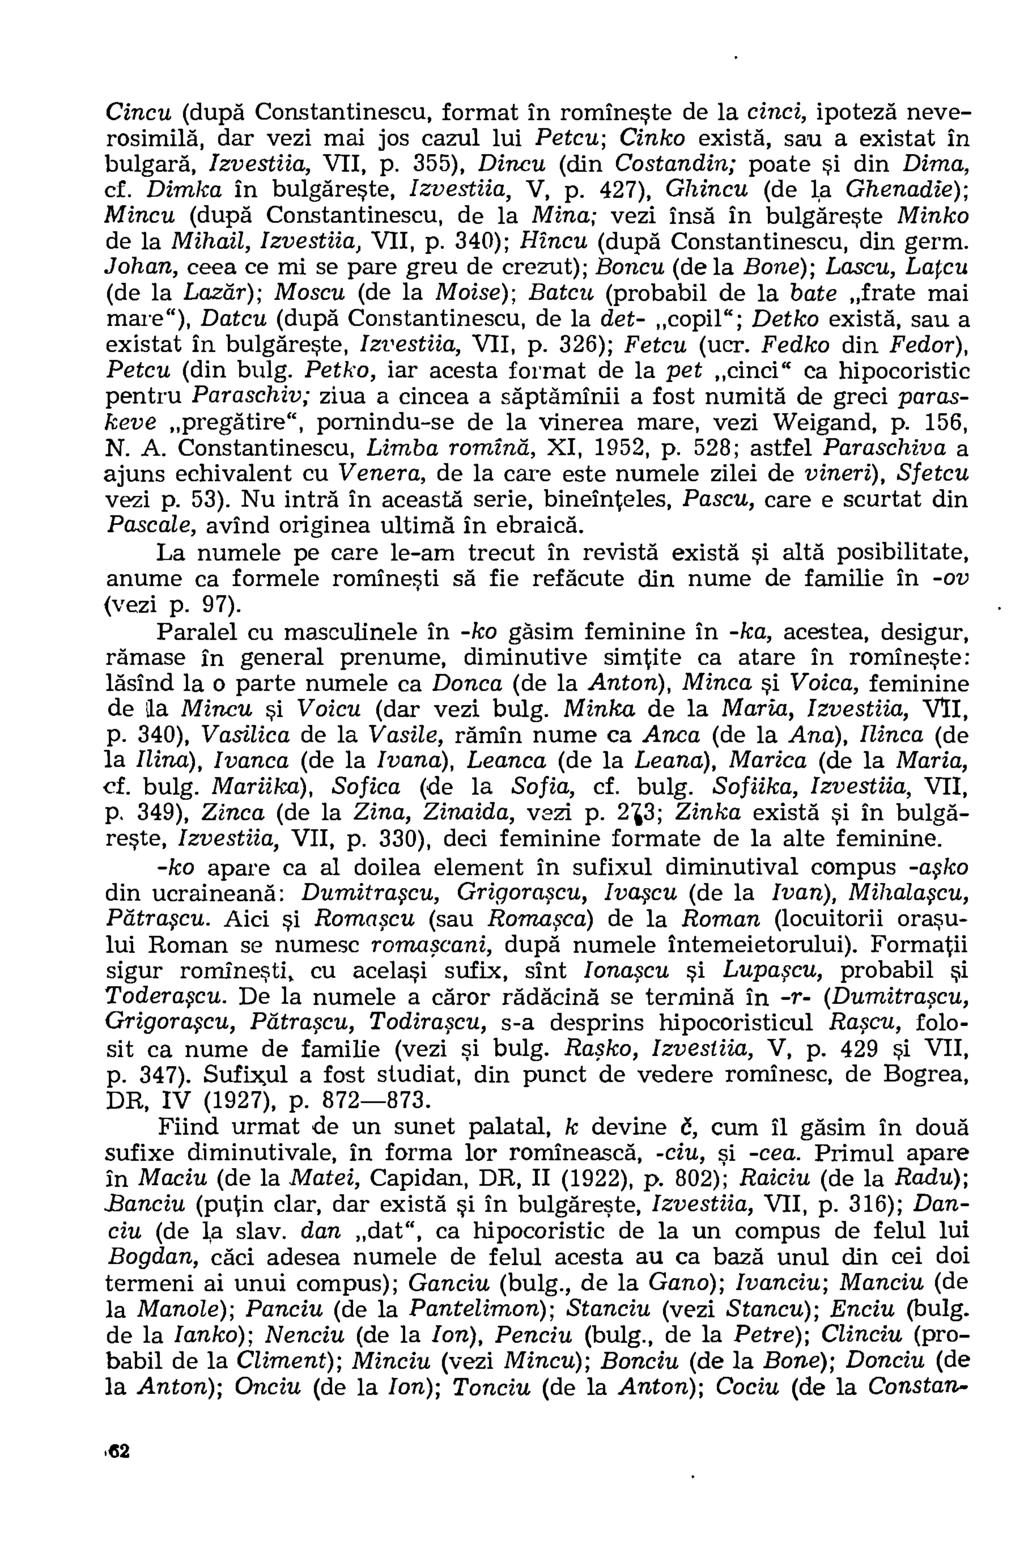 Cincu (dupa Constantinescu, format in romineste de la cinci, ipoteza neverosimila, dar vezi mai jos cazul lui Petcu; Cinko exists, sau a existat in bulgara, Izvestiia, VII, p.